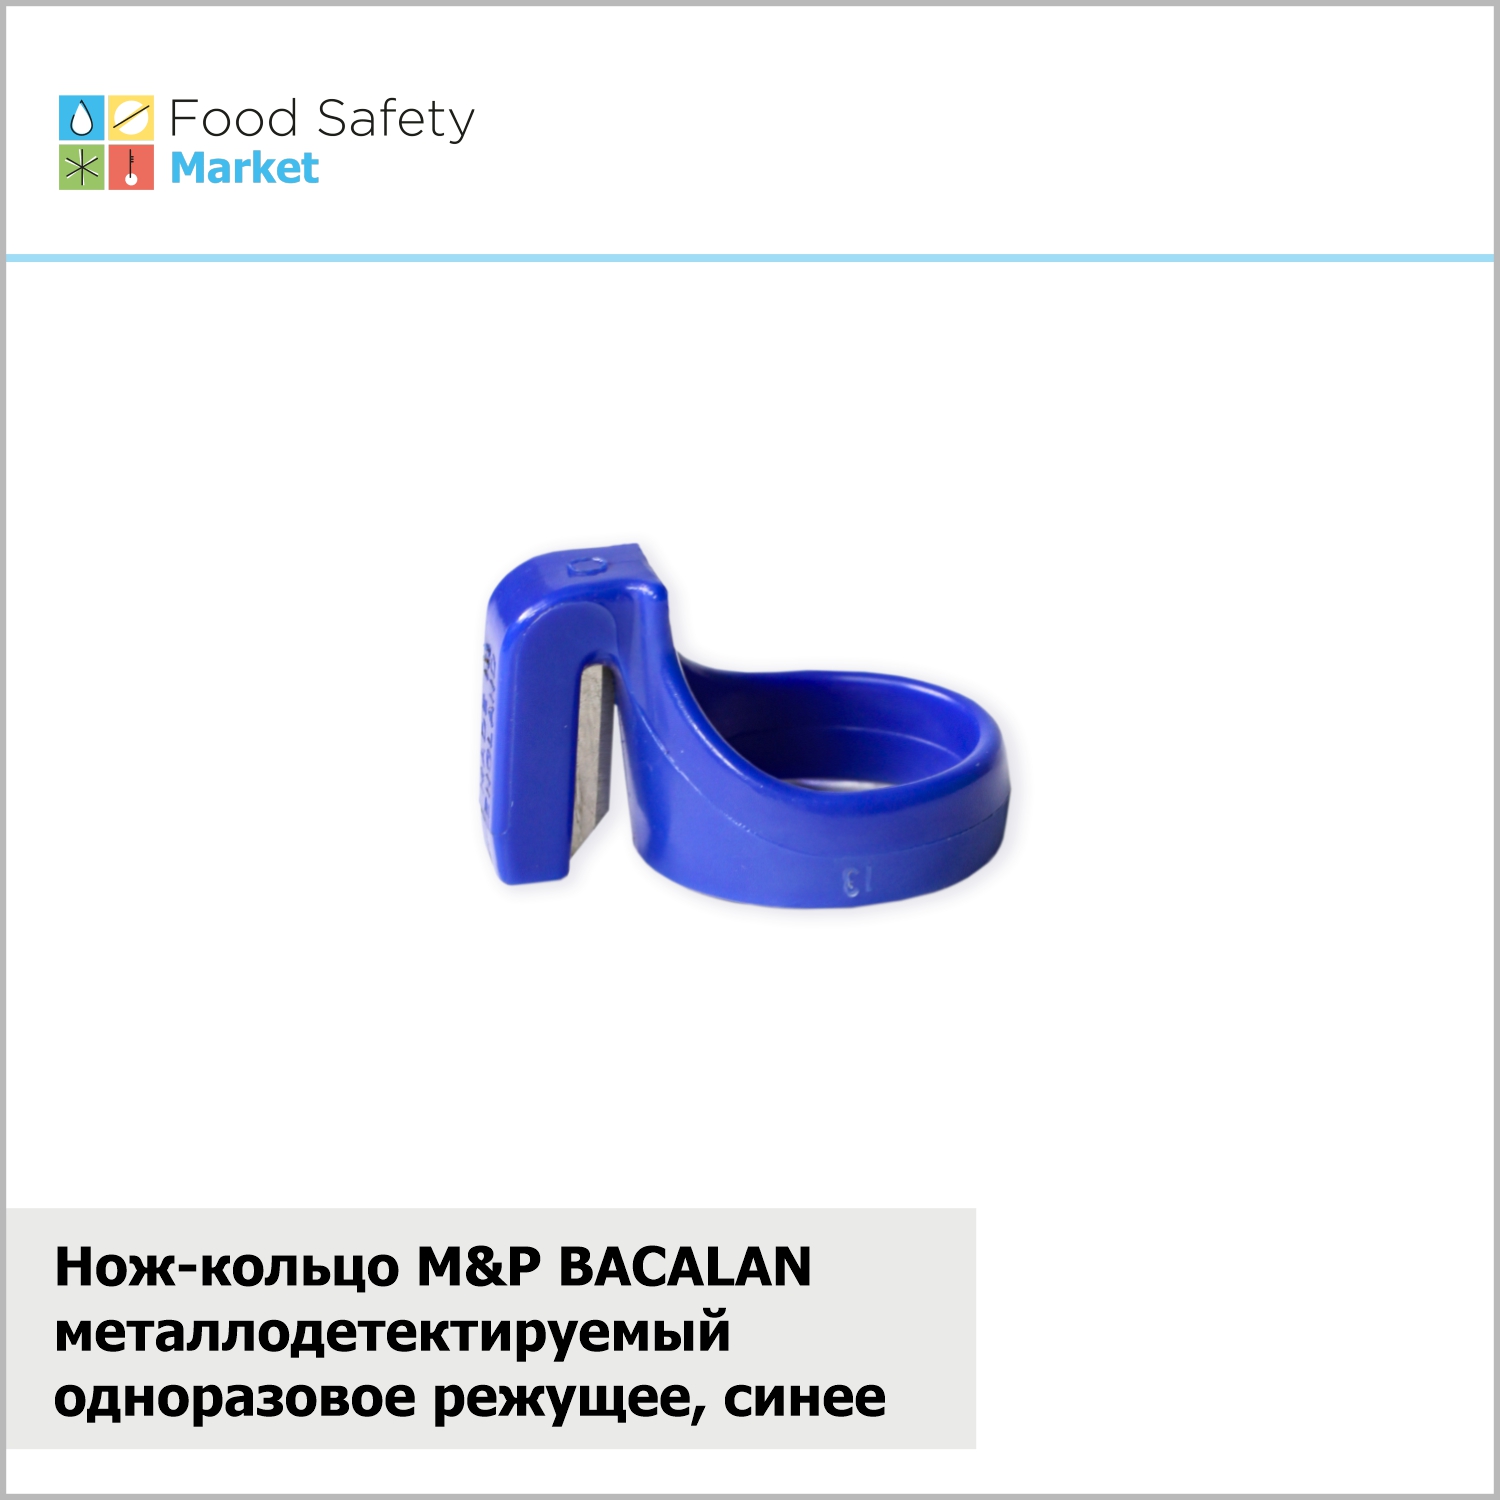 Нож-кольцо металлодетектируемый  M&P BACALAN одноразовое режущее, синее